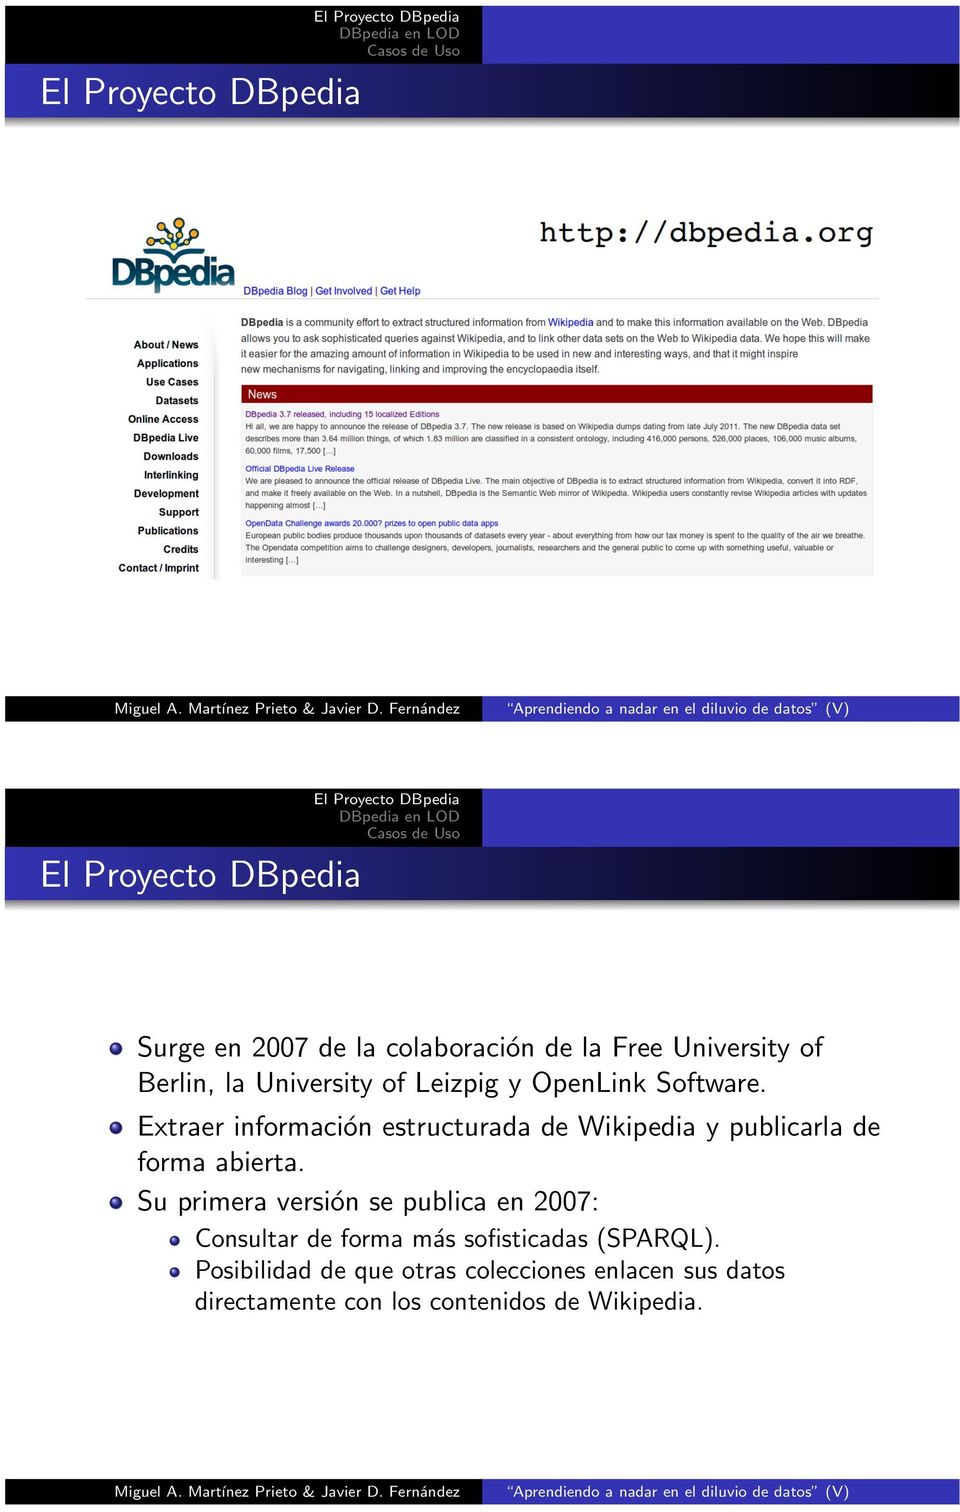 Extraer información estructurada de Wikipedia y publicarla de forma abierta.